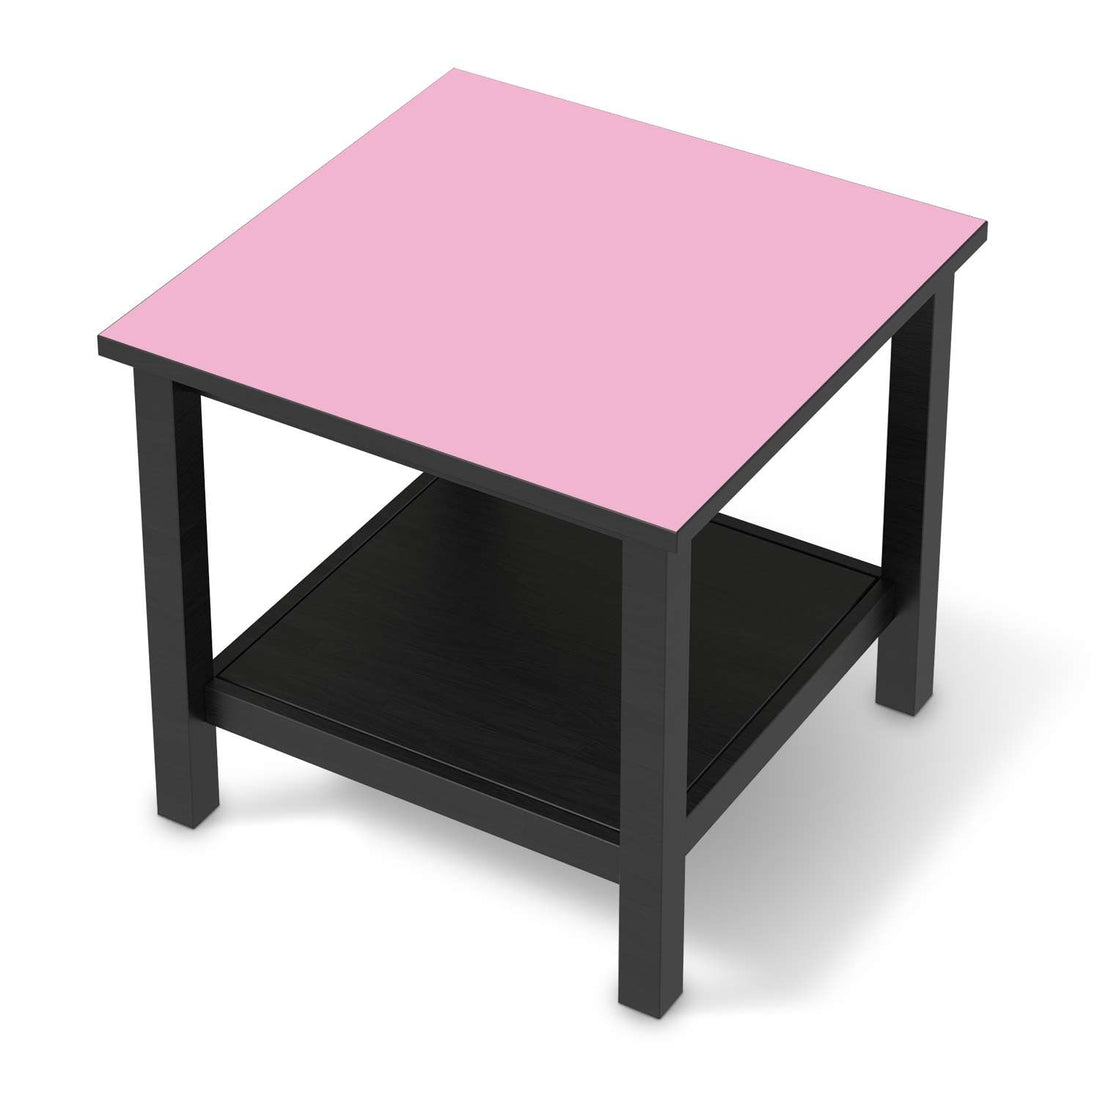 Möbel Klebefolie Pink Light - IKEA Hemnes Beistelltisch 55x55 cm - schwarz